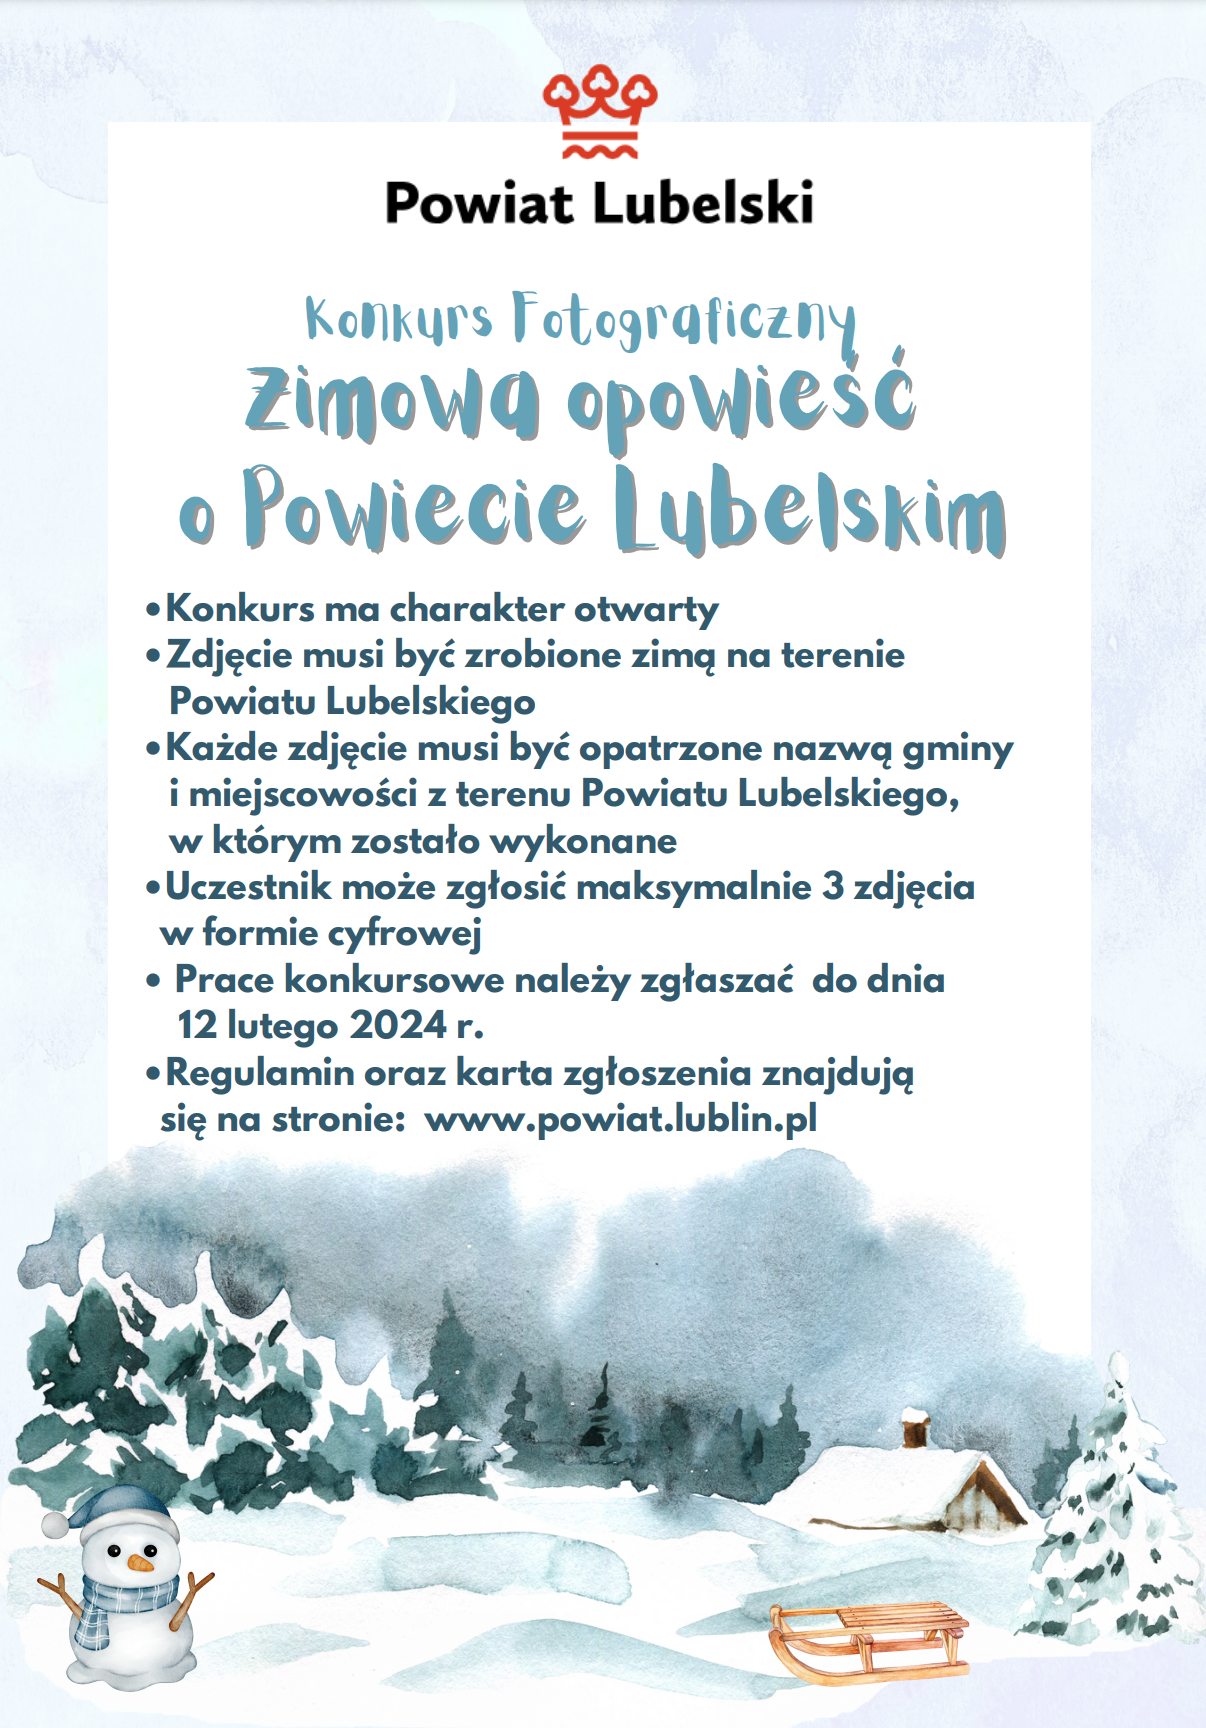 Plakat konkursu fotograficznego zimowego, z ilustracjami śniegu, choinek i uroczego bałwanka, zawierający informacje o zasadach i nagrodach.